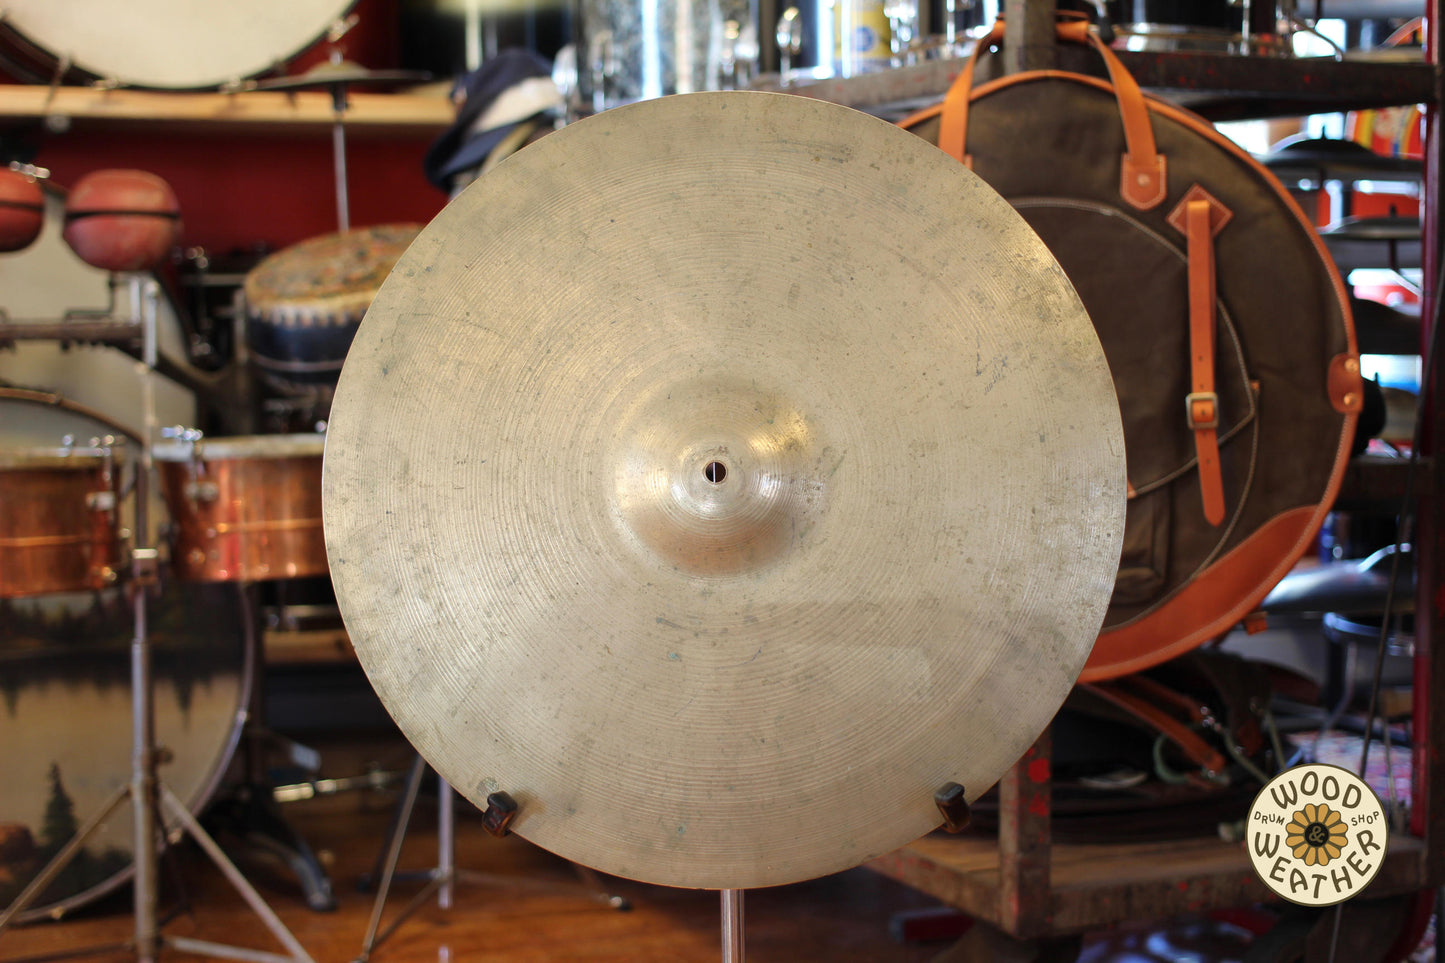 1960s A. Zildjian 20" Ride Cymbal 2970g